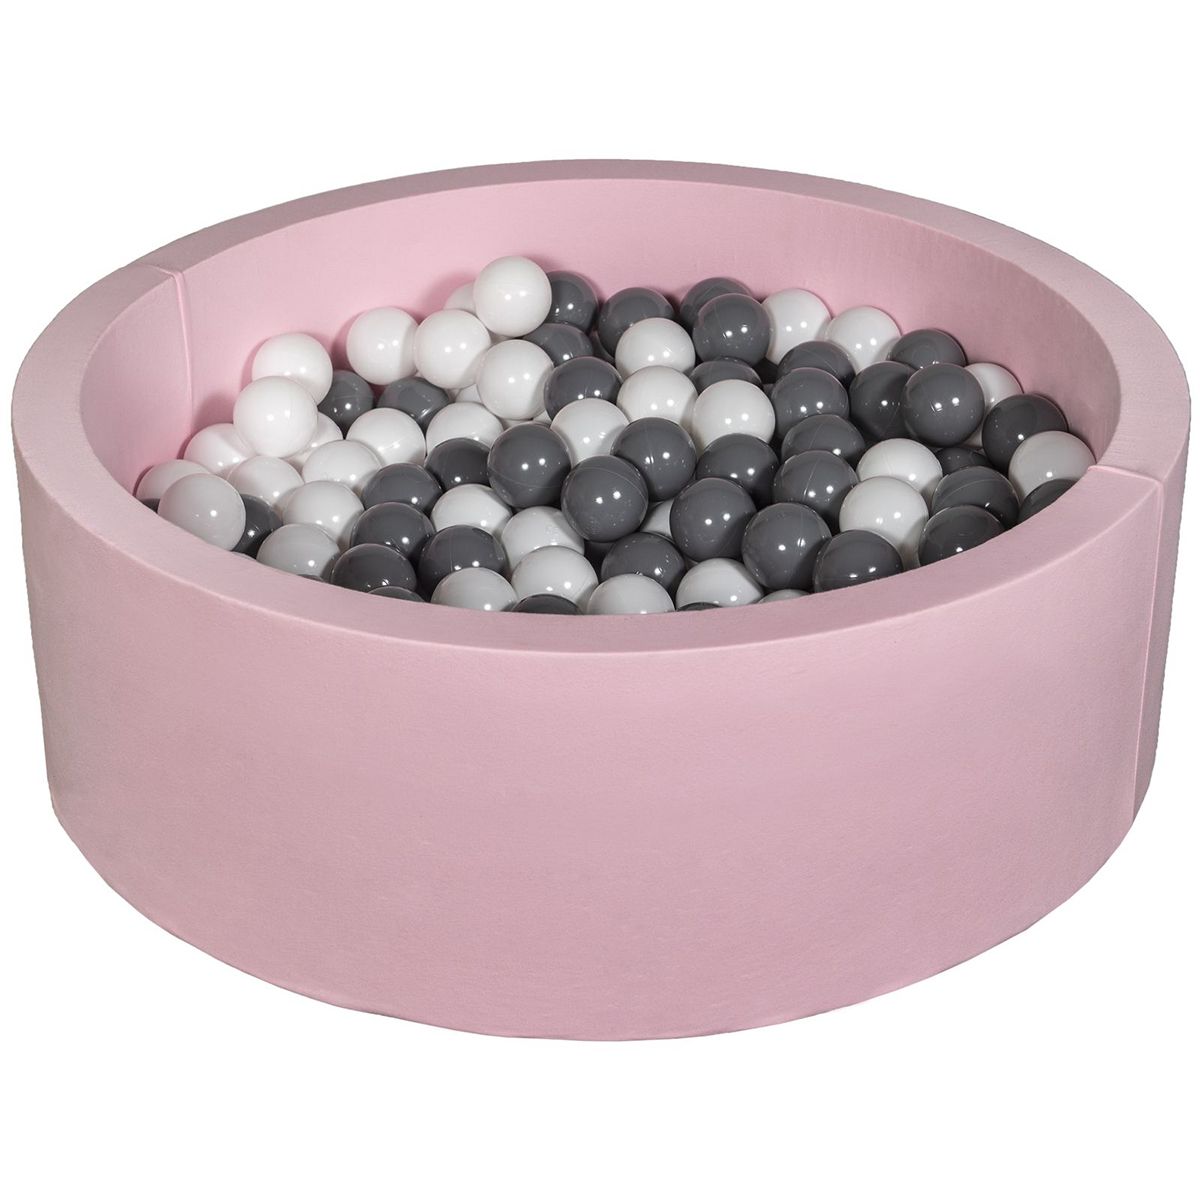  Piscine à balles Aire de jeu + 300 balles rose blanc,gris